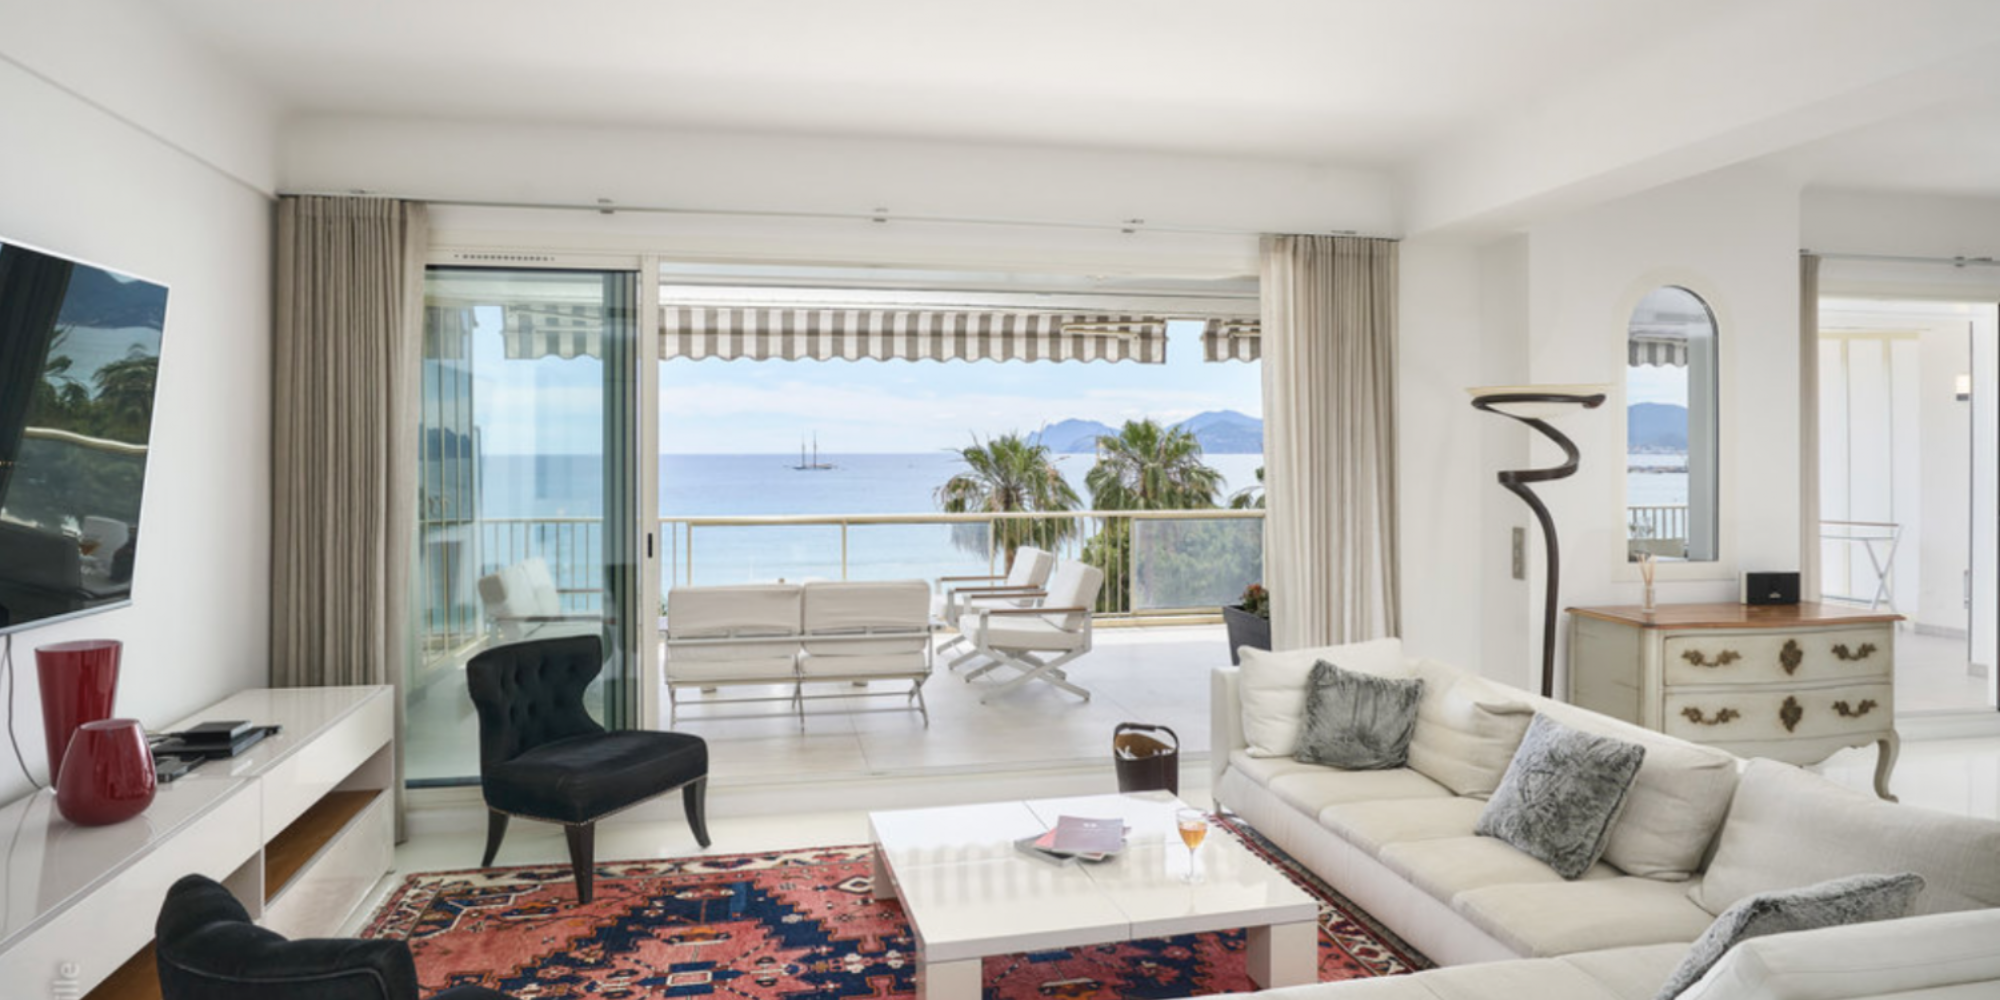 Superb Duplex Apartment In Cannes